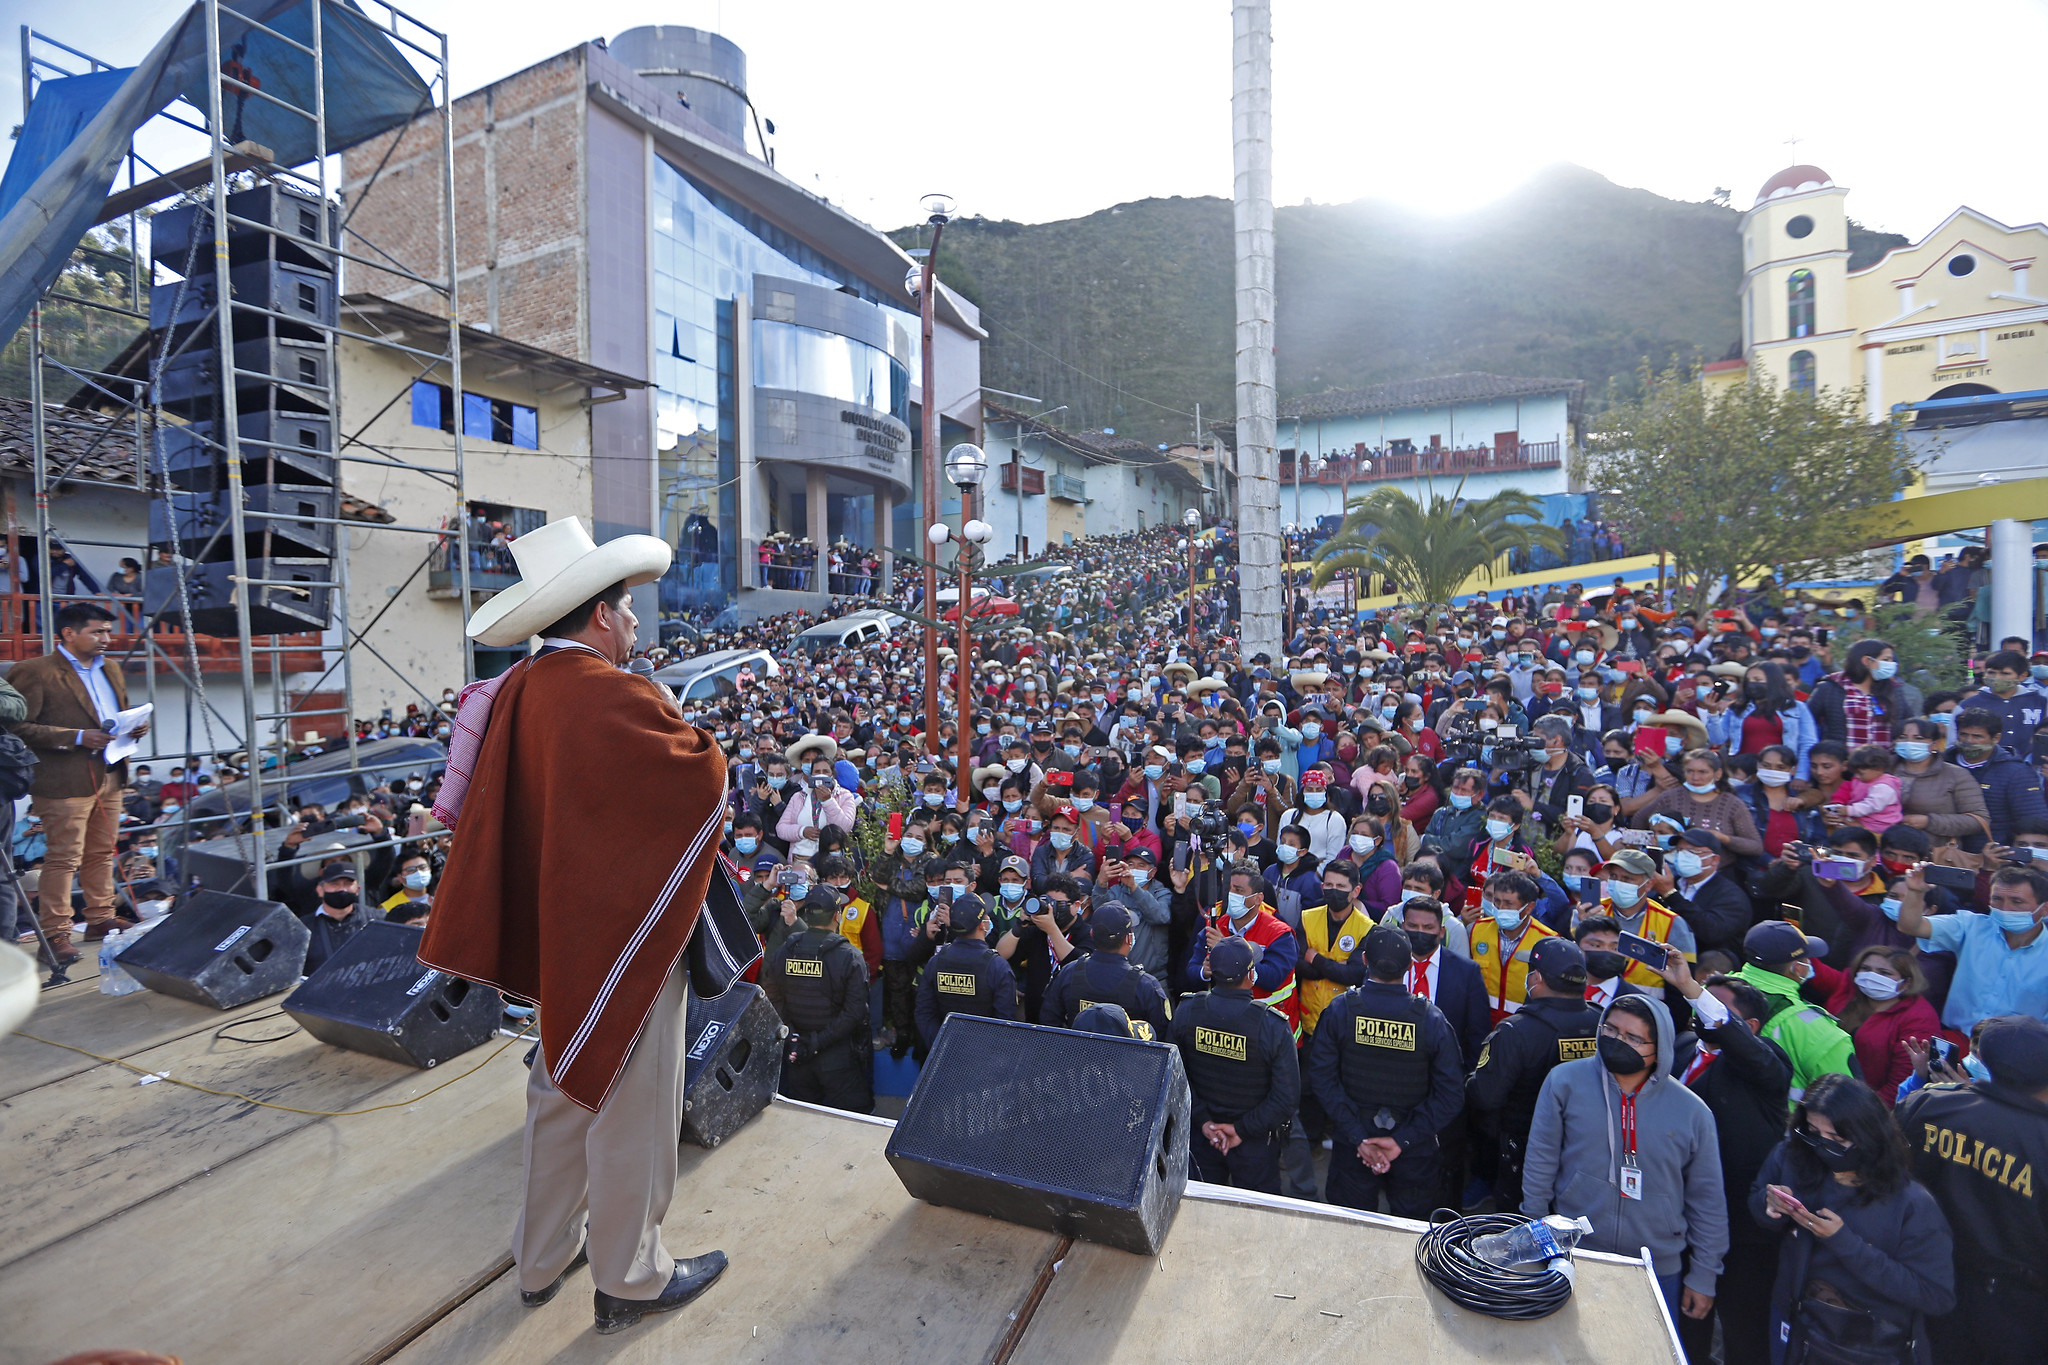 Presidente Castillo anuncia reinicio de trabajos en carretera Guineamayo - La Palma de Cajamarca que fue abandonada hace dos años